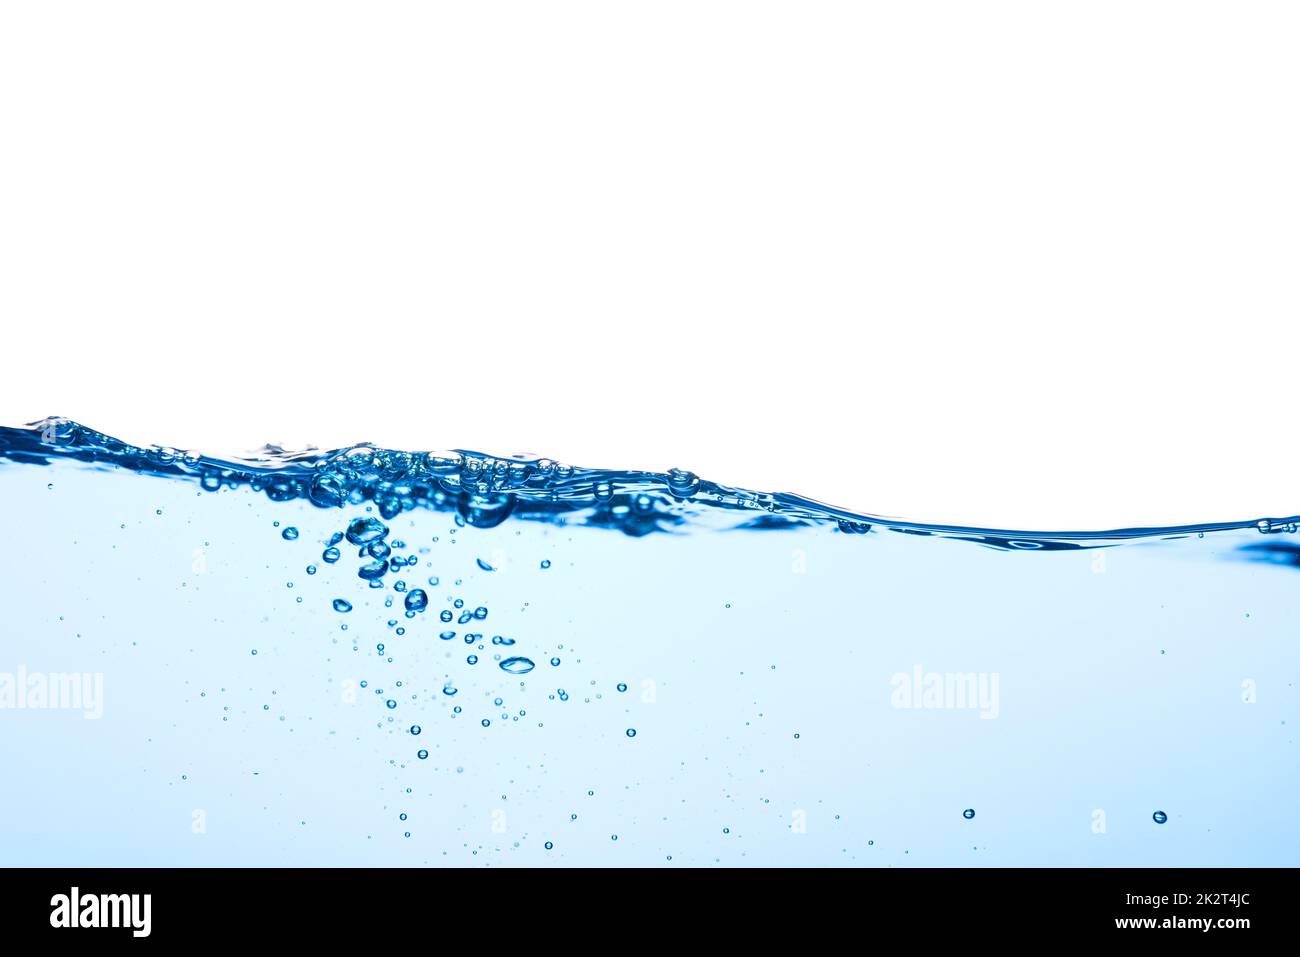 Vague d'eau bleu clair avec bulles d'air et un peu un embout éclaboussé sous l'eau Banque D'Images